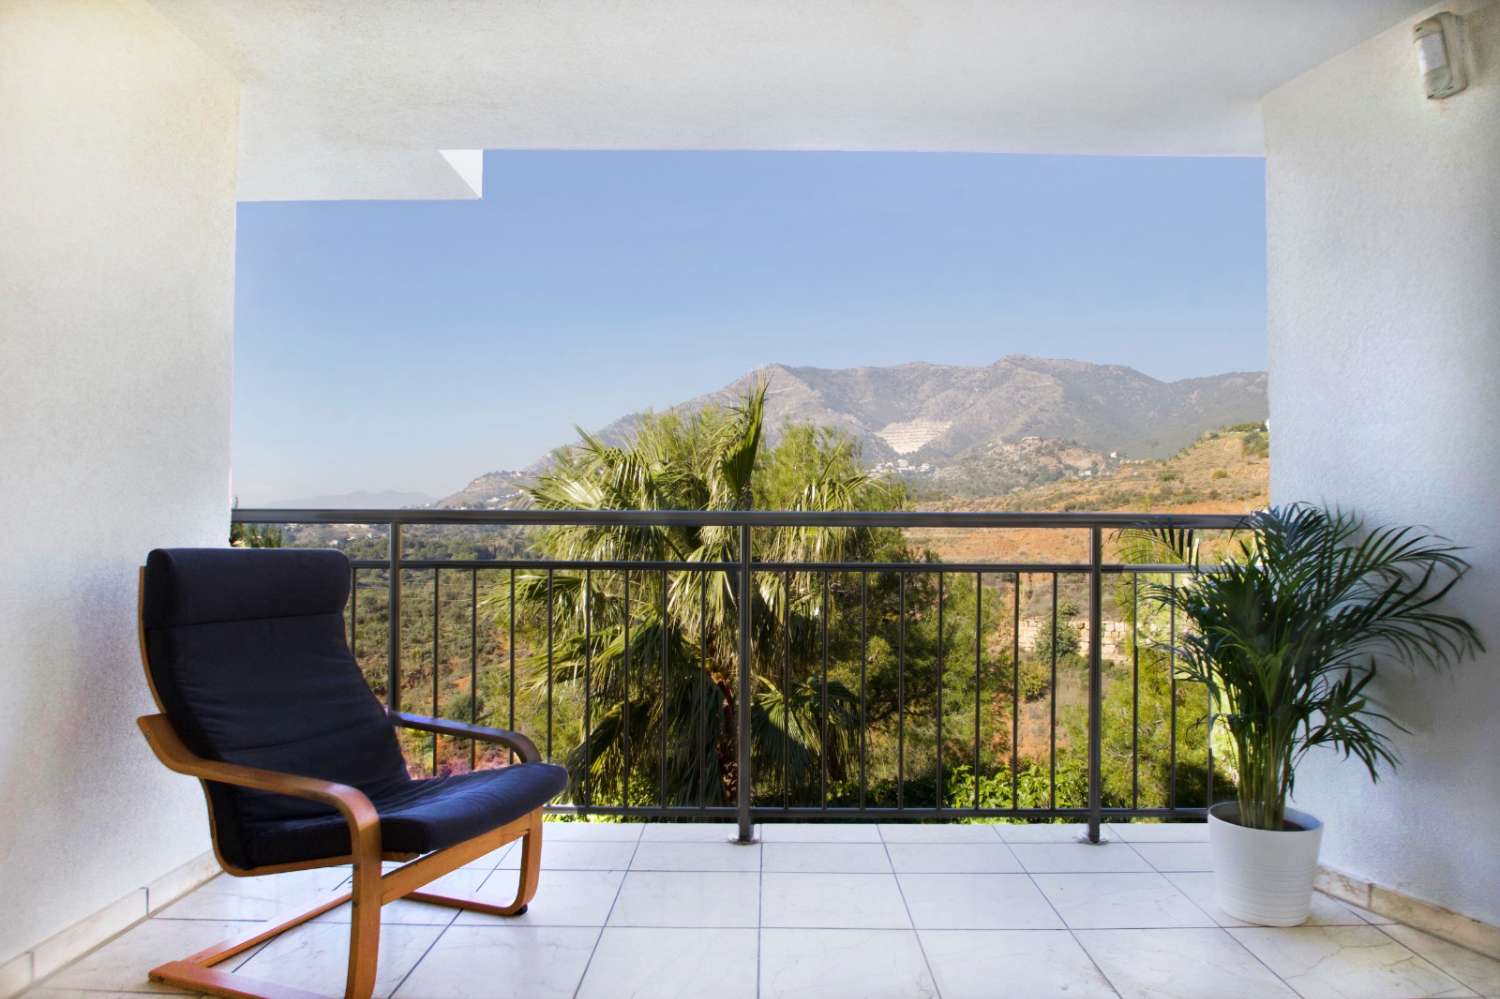 SPECTACULAIRE Villa te koop in urbanisatie van Mijas met panoramisch uitzicht